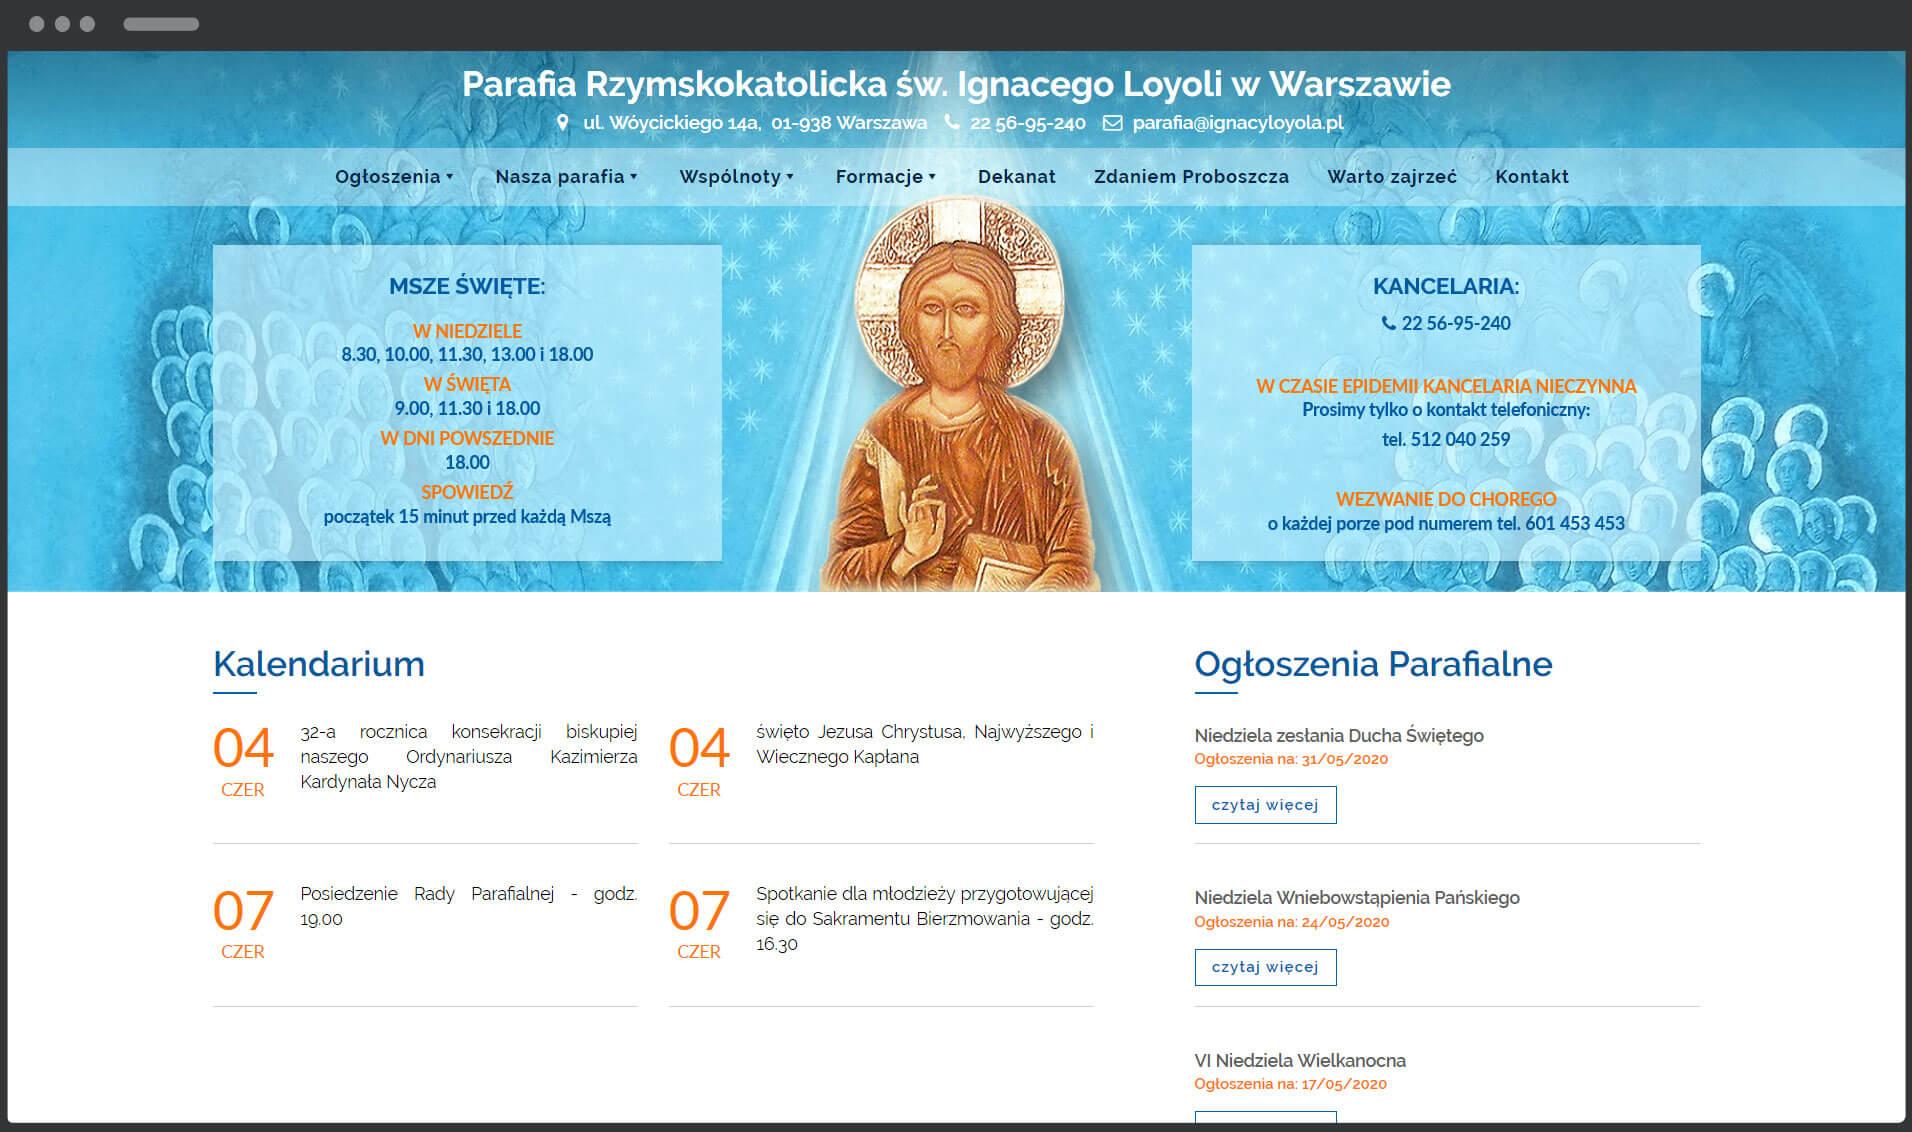 Parafia Rzymskokatolicka św. Ignacego Loyoli w Warszawie